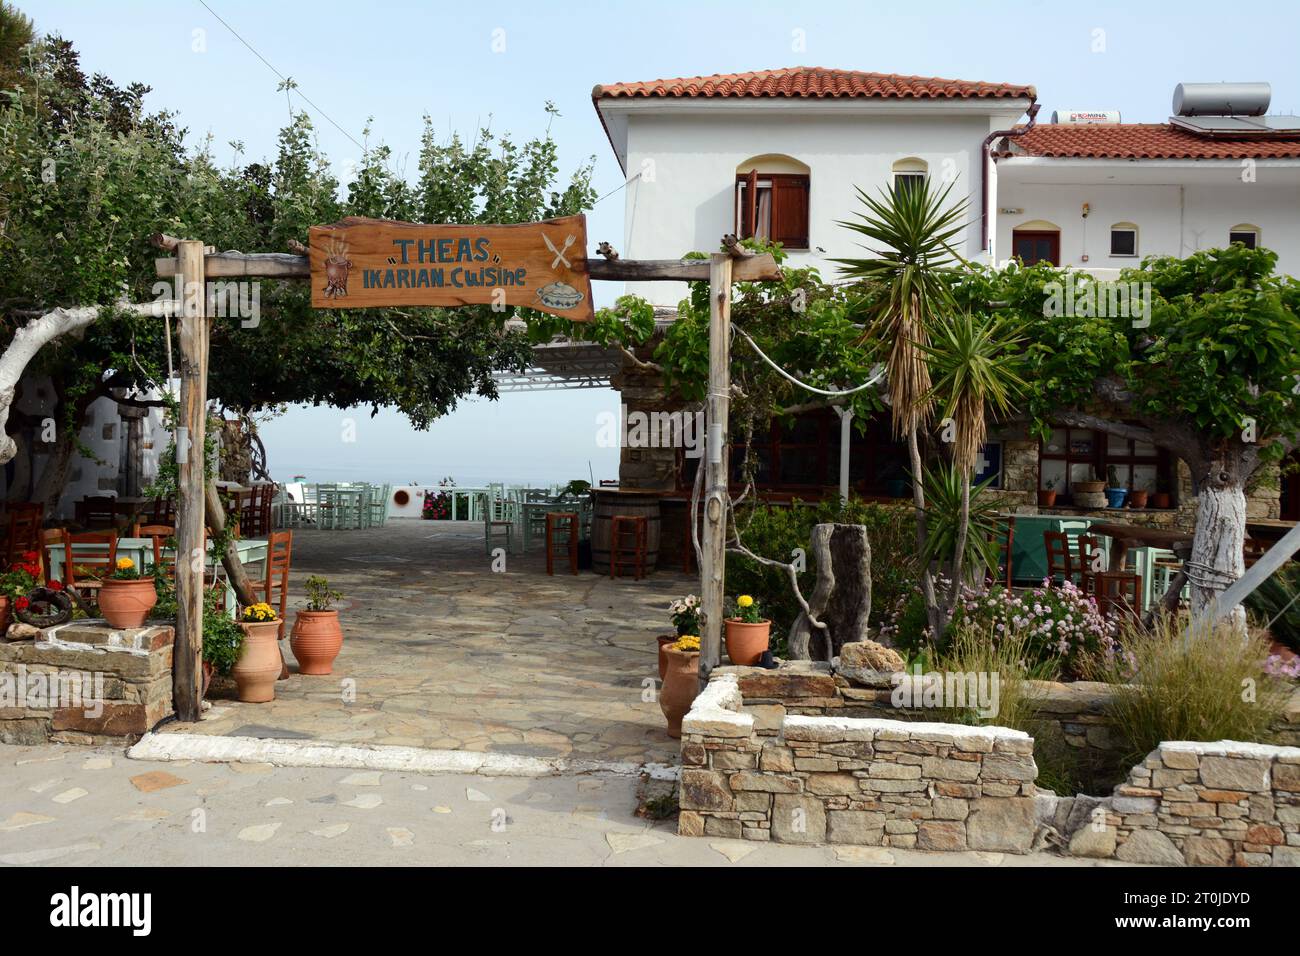 L'emblématique Thea's Inn et restaurant dans le village de NAS sur la côte nord de l'île grecque d'Ikaria, une «zone bleue» en Grèce. Banque D'Images